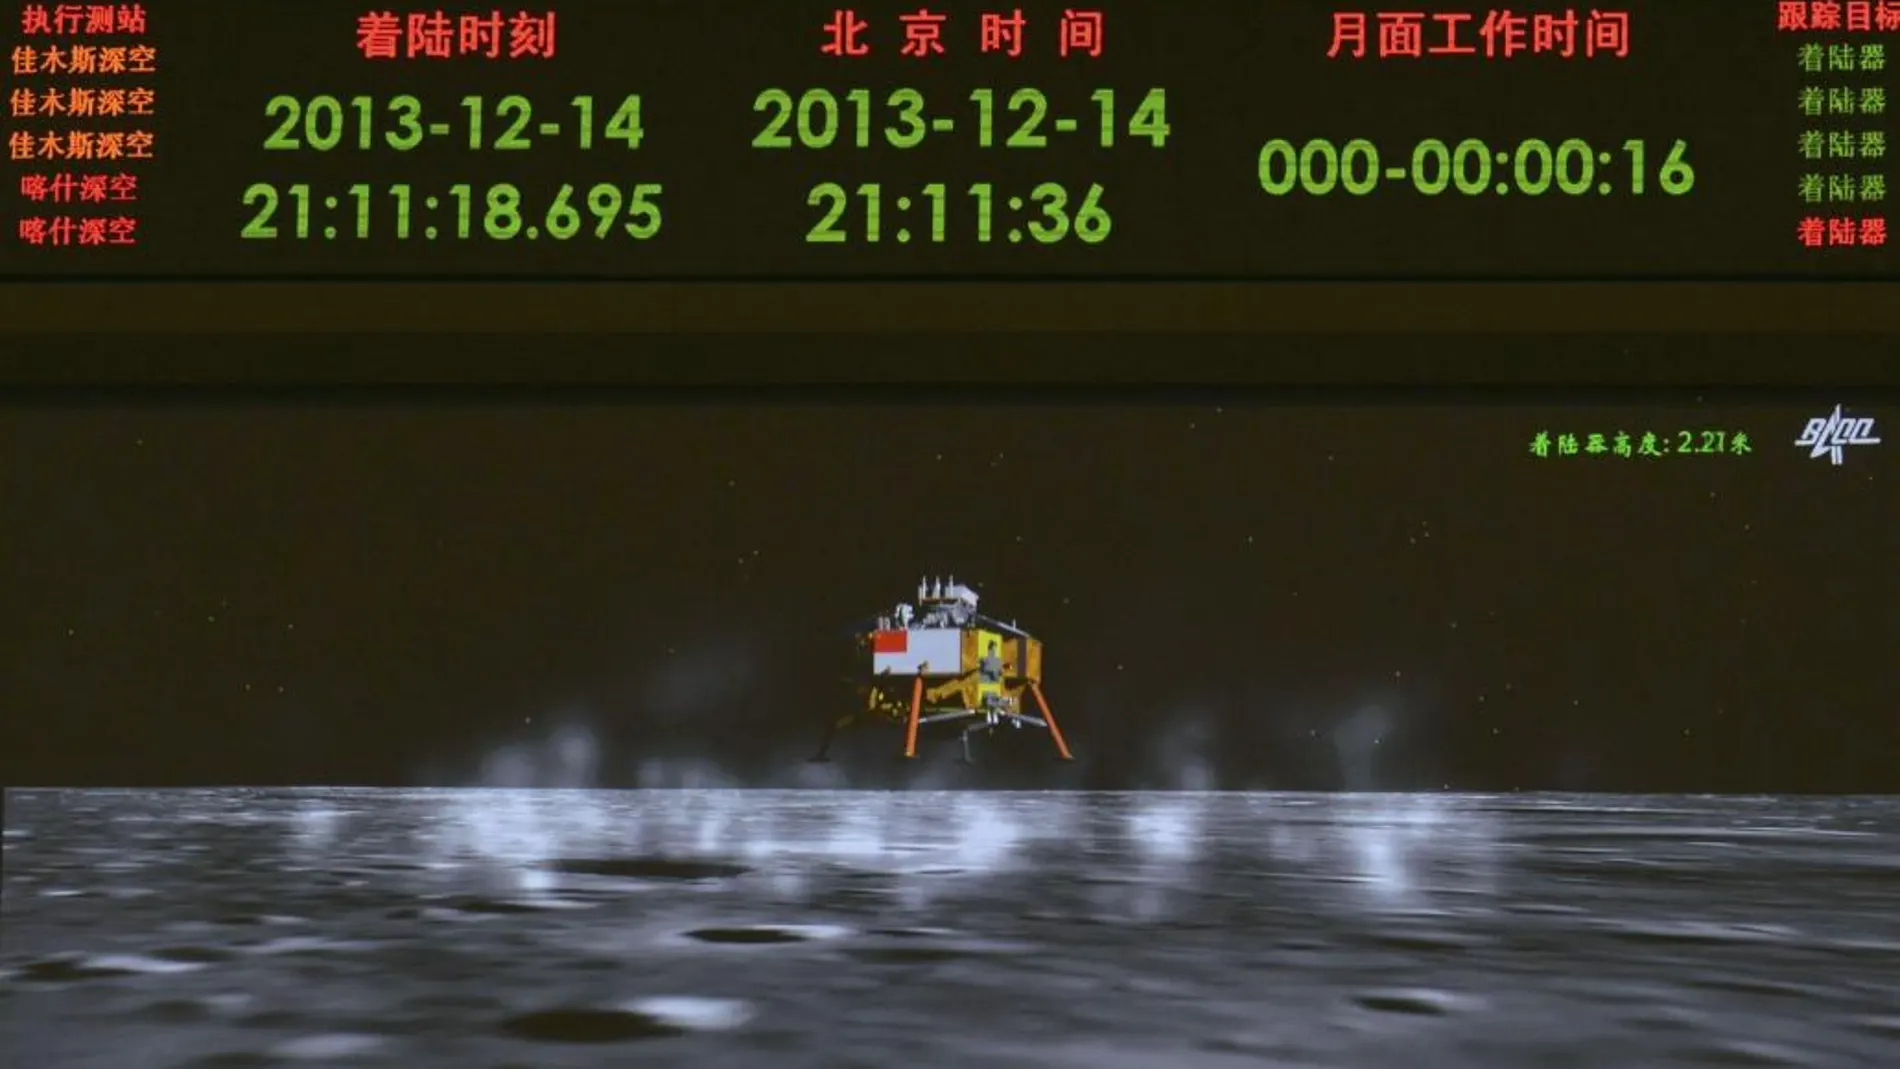 El predecesor del Chang’e 4, el Chang’e 3, ya alunizó en la cara vista de la Luna, y hoy en día sigue enviando información